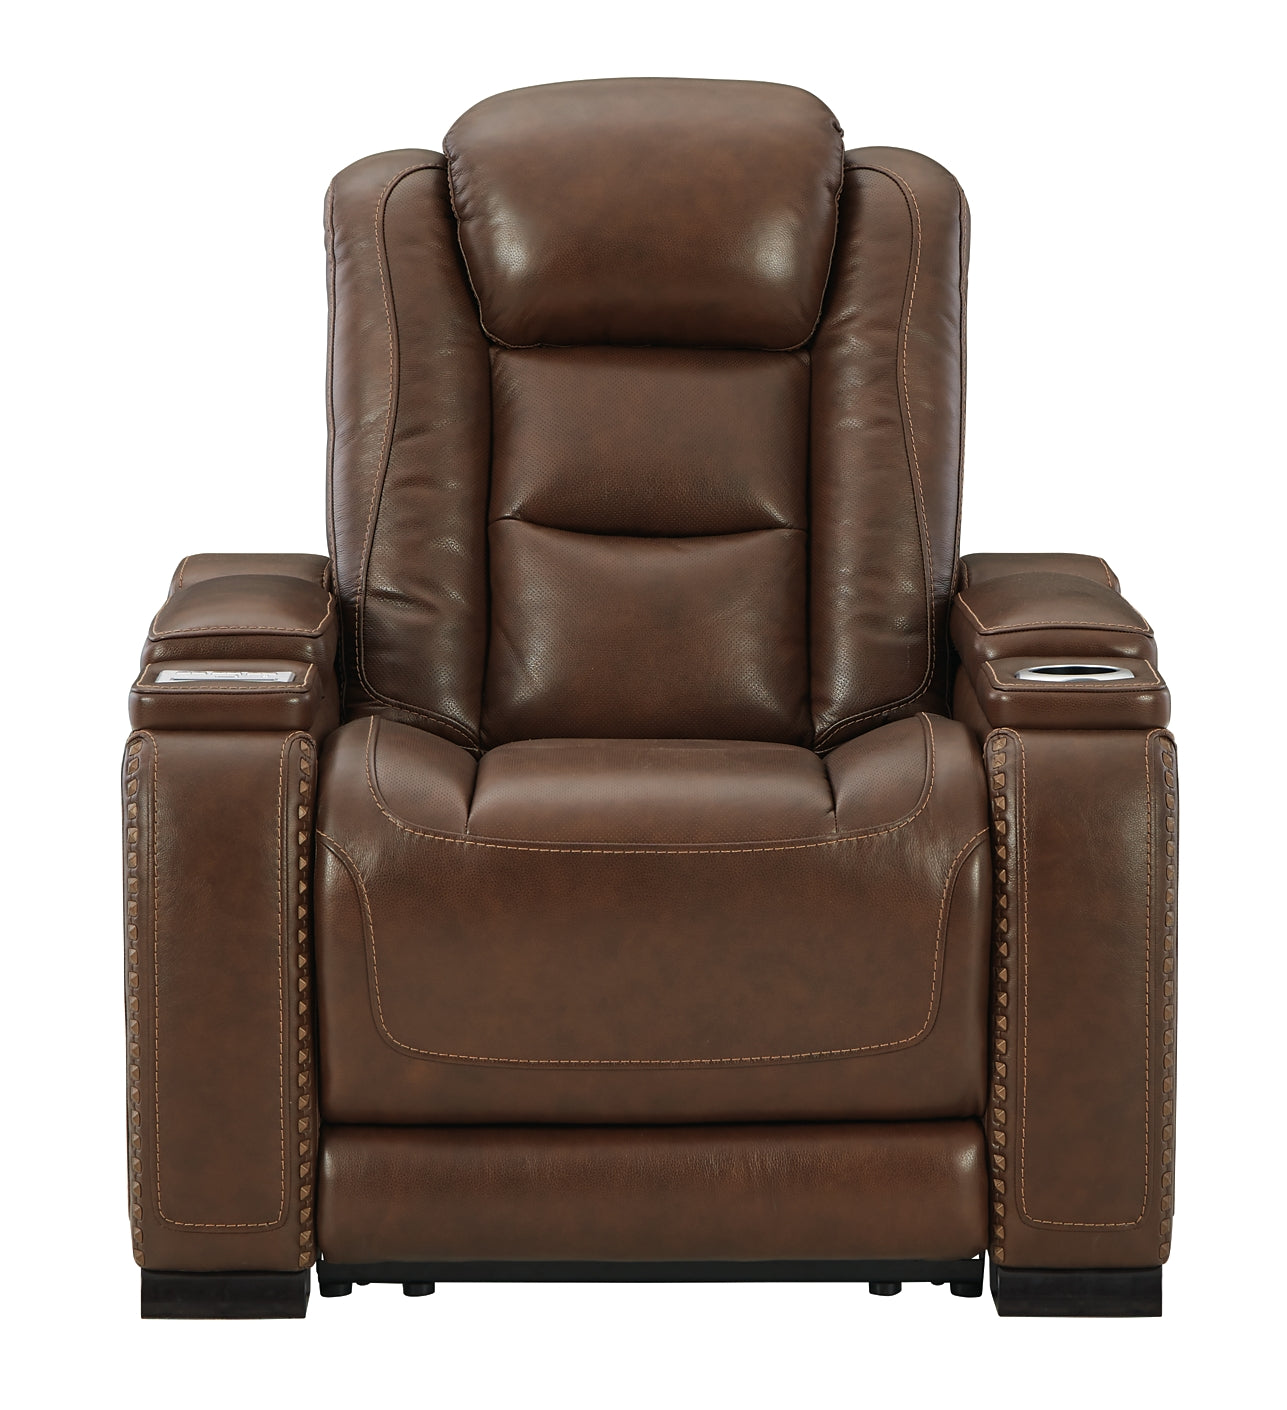 The Man-Den PWR Recliner/ADJ Headrest Smyrna Furniture Outlet